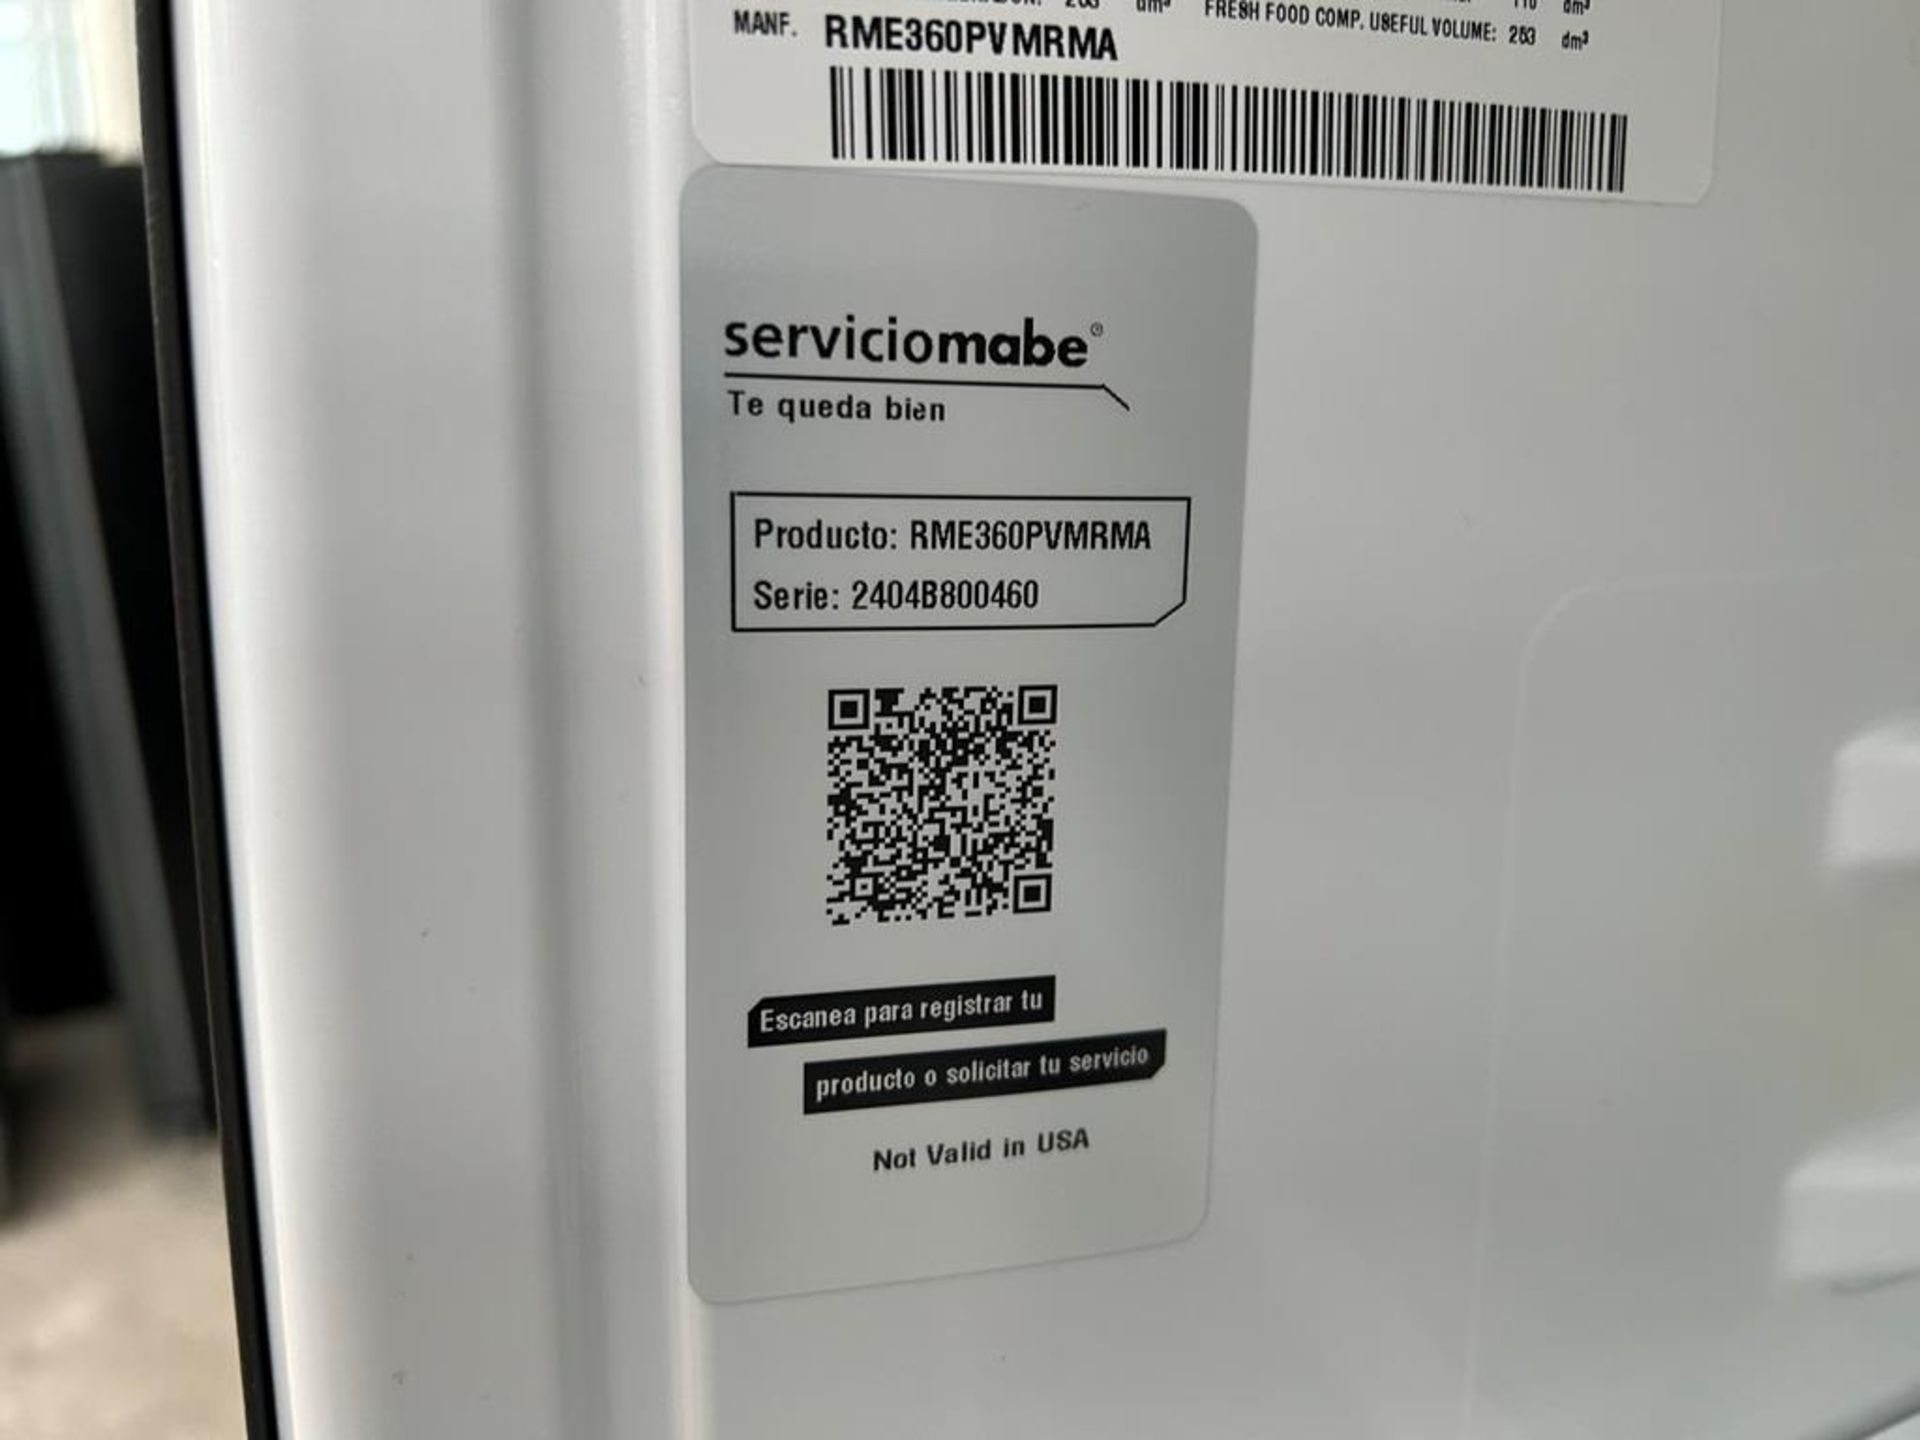 Lote de 2 refrigeradores contiene: 1 Refrigerador Marca MABE, Modelo RME360PVMRM0, Serie 04453, Col - Image 8 of 16